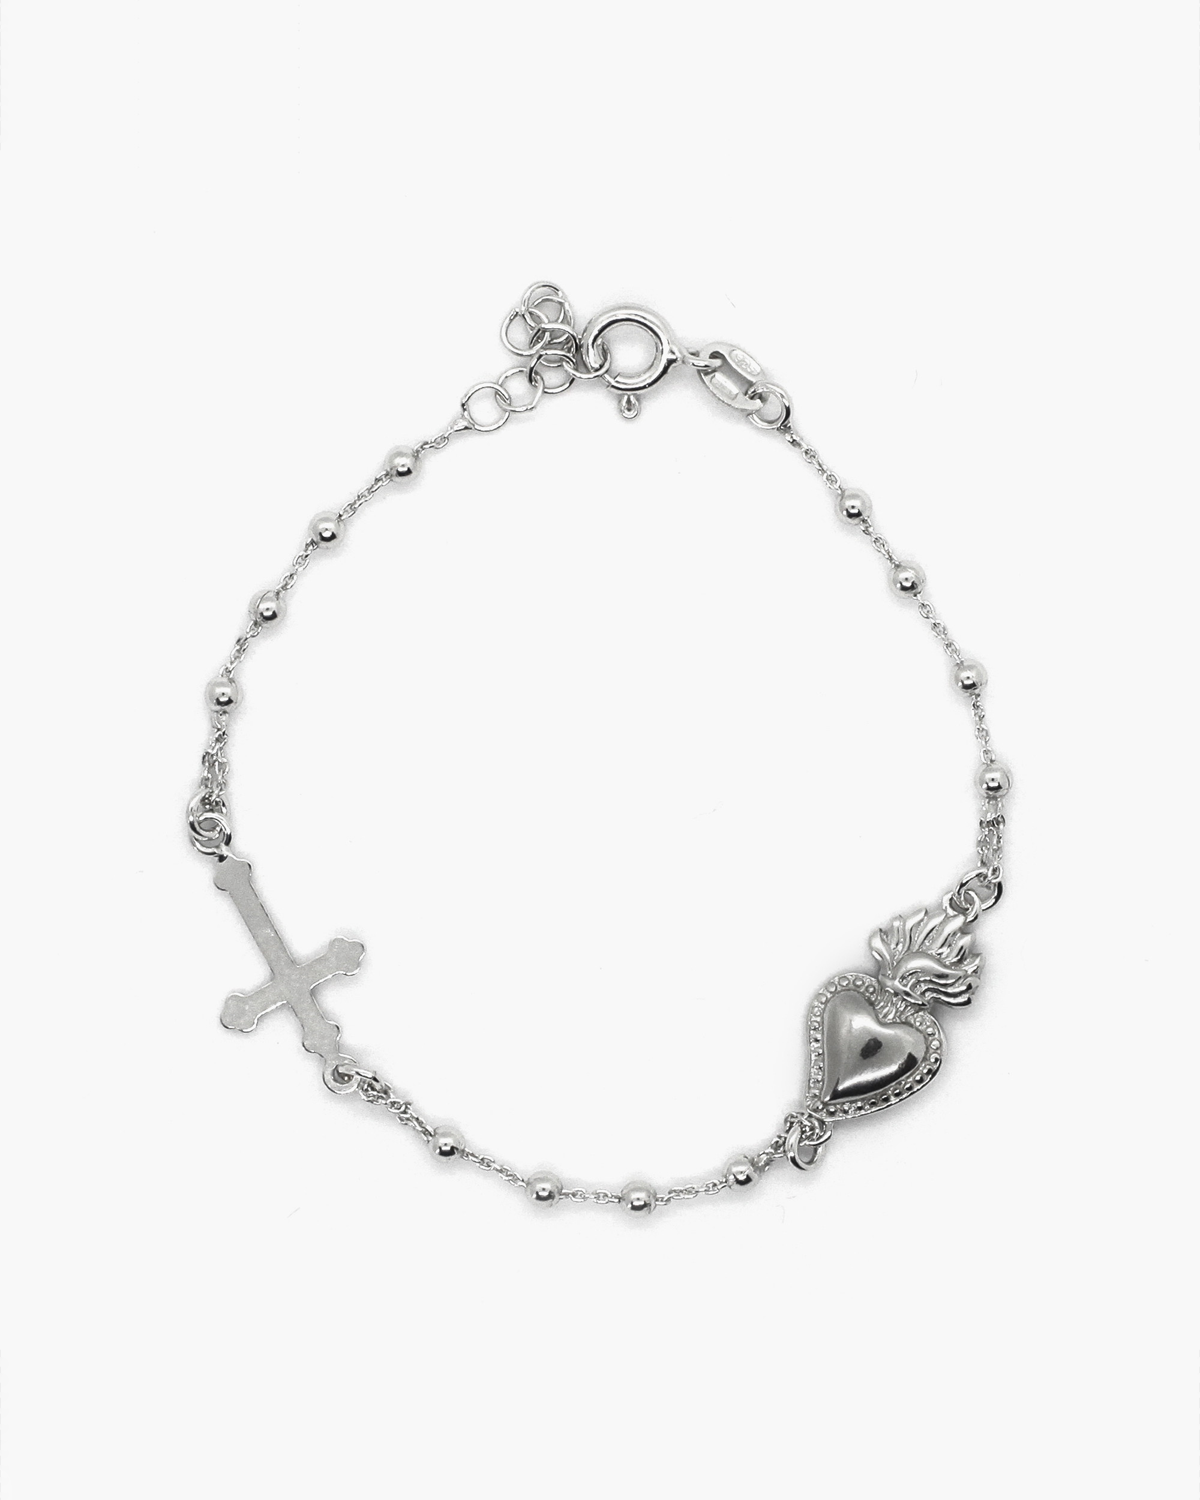 Black Cord Rosary Bracelet – Gerken's Religious Supplies